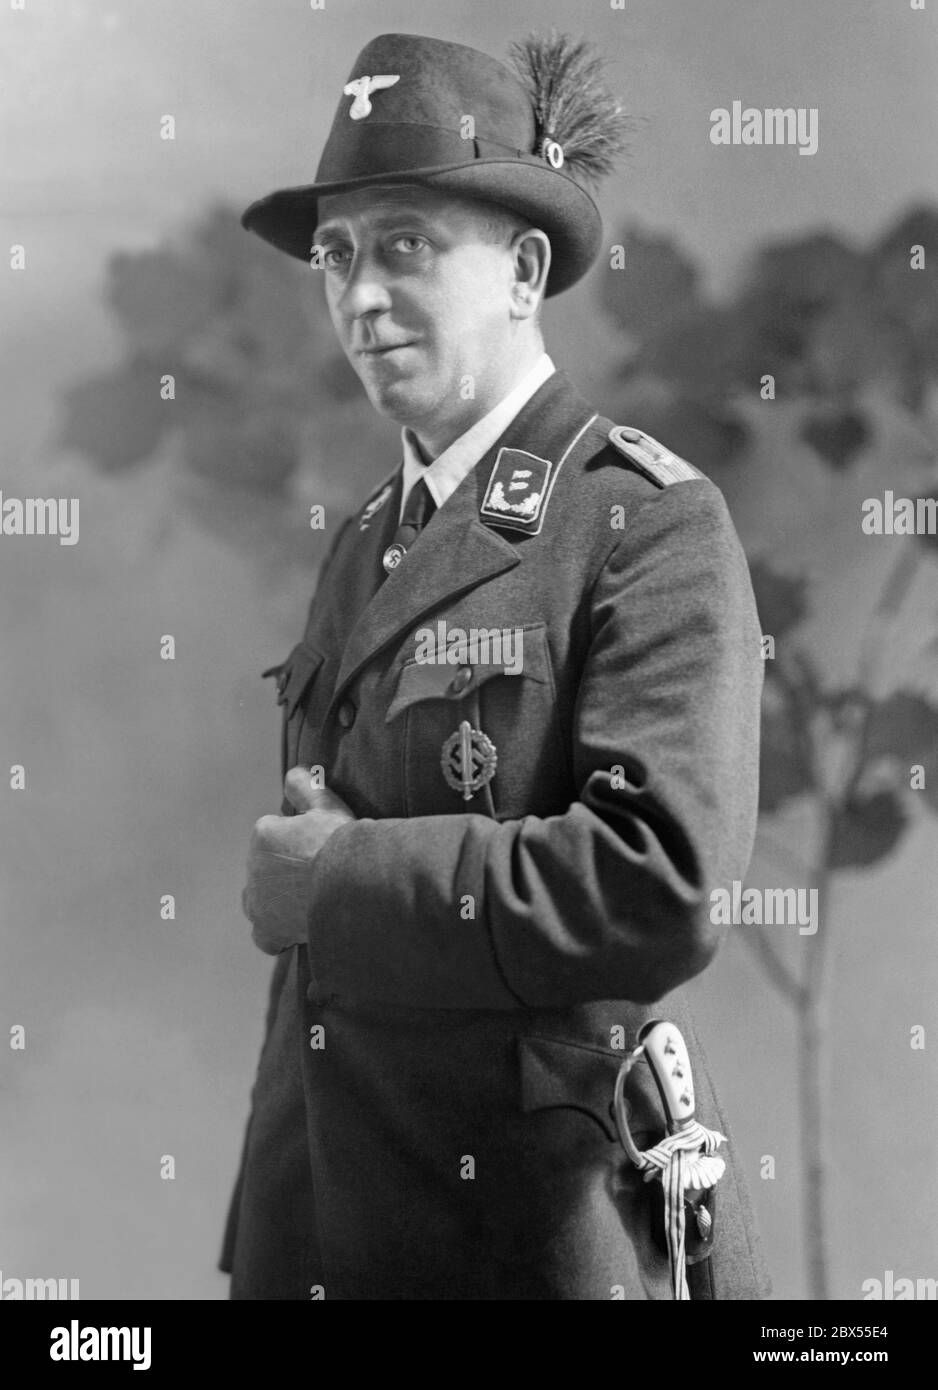 Un forester en su nuevo uniforme. Lleva la insignia deportiva de la SA en su pecho y la insignia del partido del NSDAP en su corbata. Foto de stock